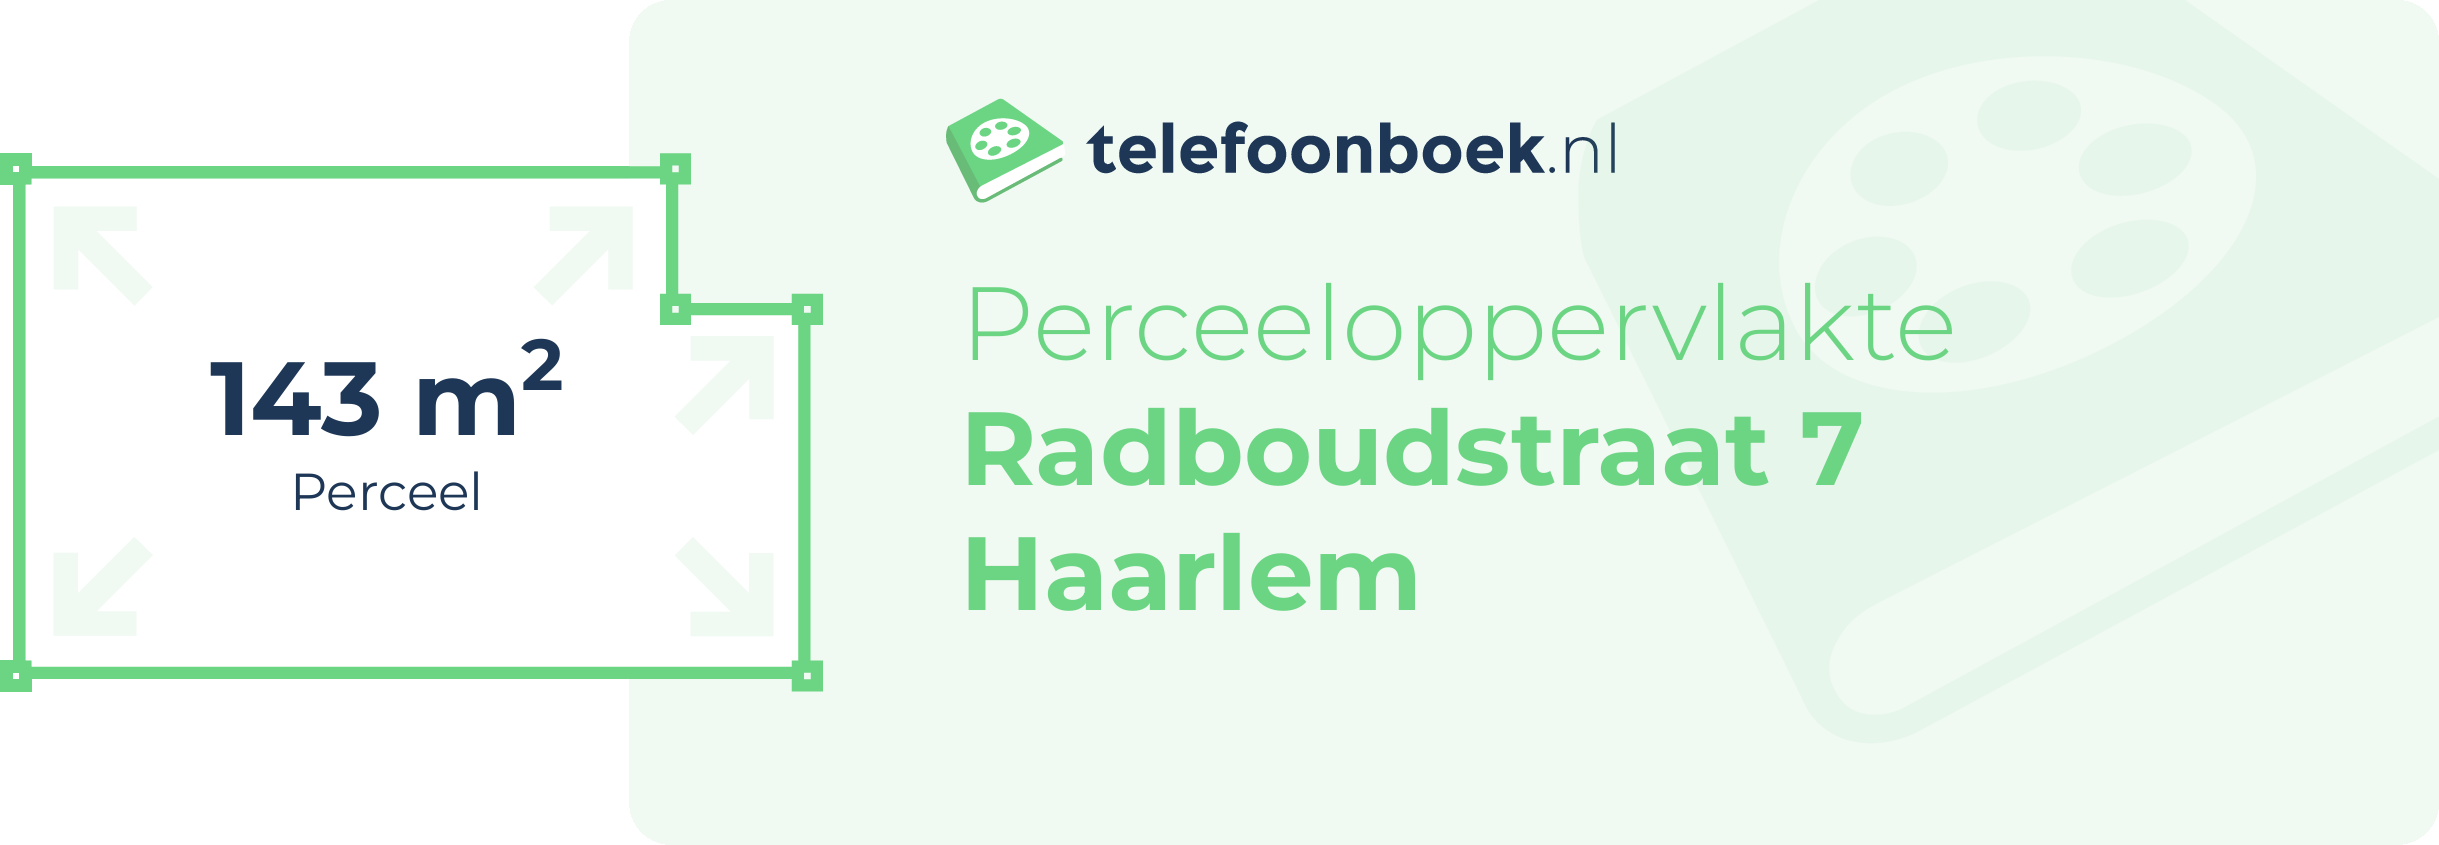 Perceeloppervlakte Radboudstraat 7 Haarlem